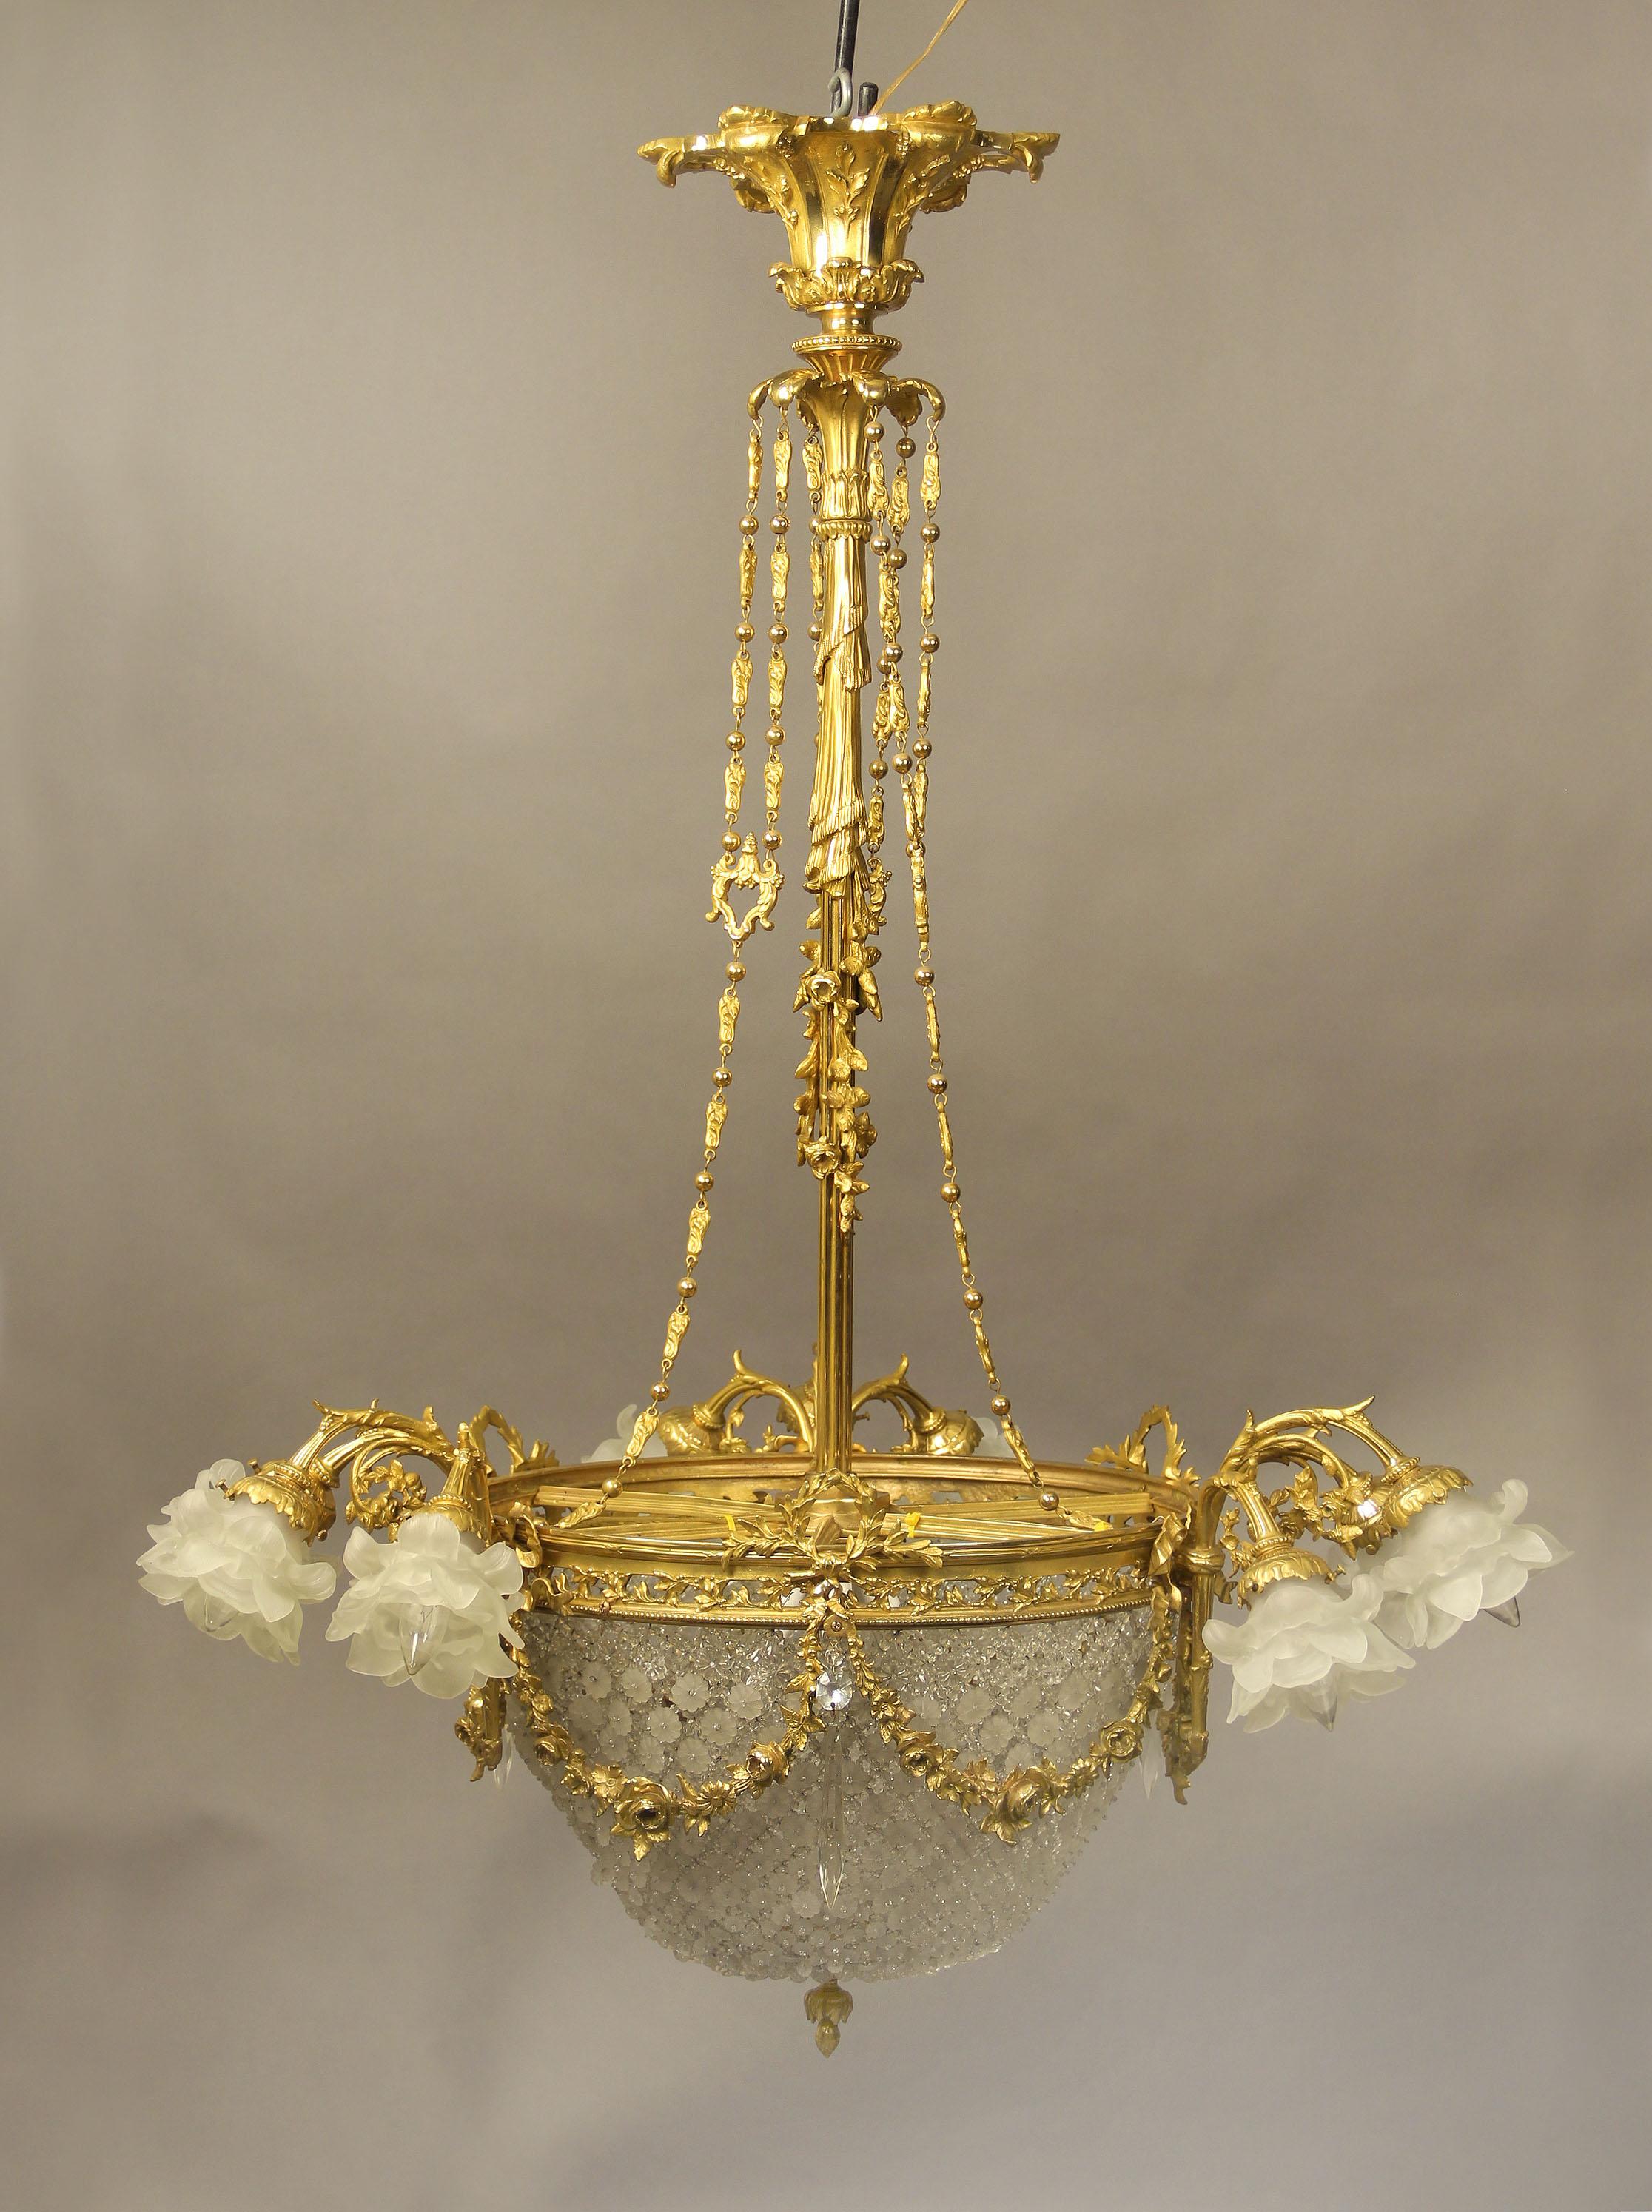 Ein außergewöhnlicher Korbleuchter aus vergoldeter Bronze und Kristall aus dem späten 19. Jahrhundert mit vierzehn Lichtern.

Die Krone ist mit dem Korpus durch einen langen, mit Blumen und Vorhängen verzierten Stiel verbunden, an dem drei